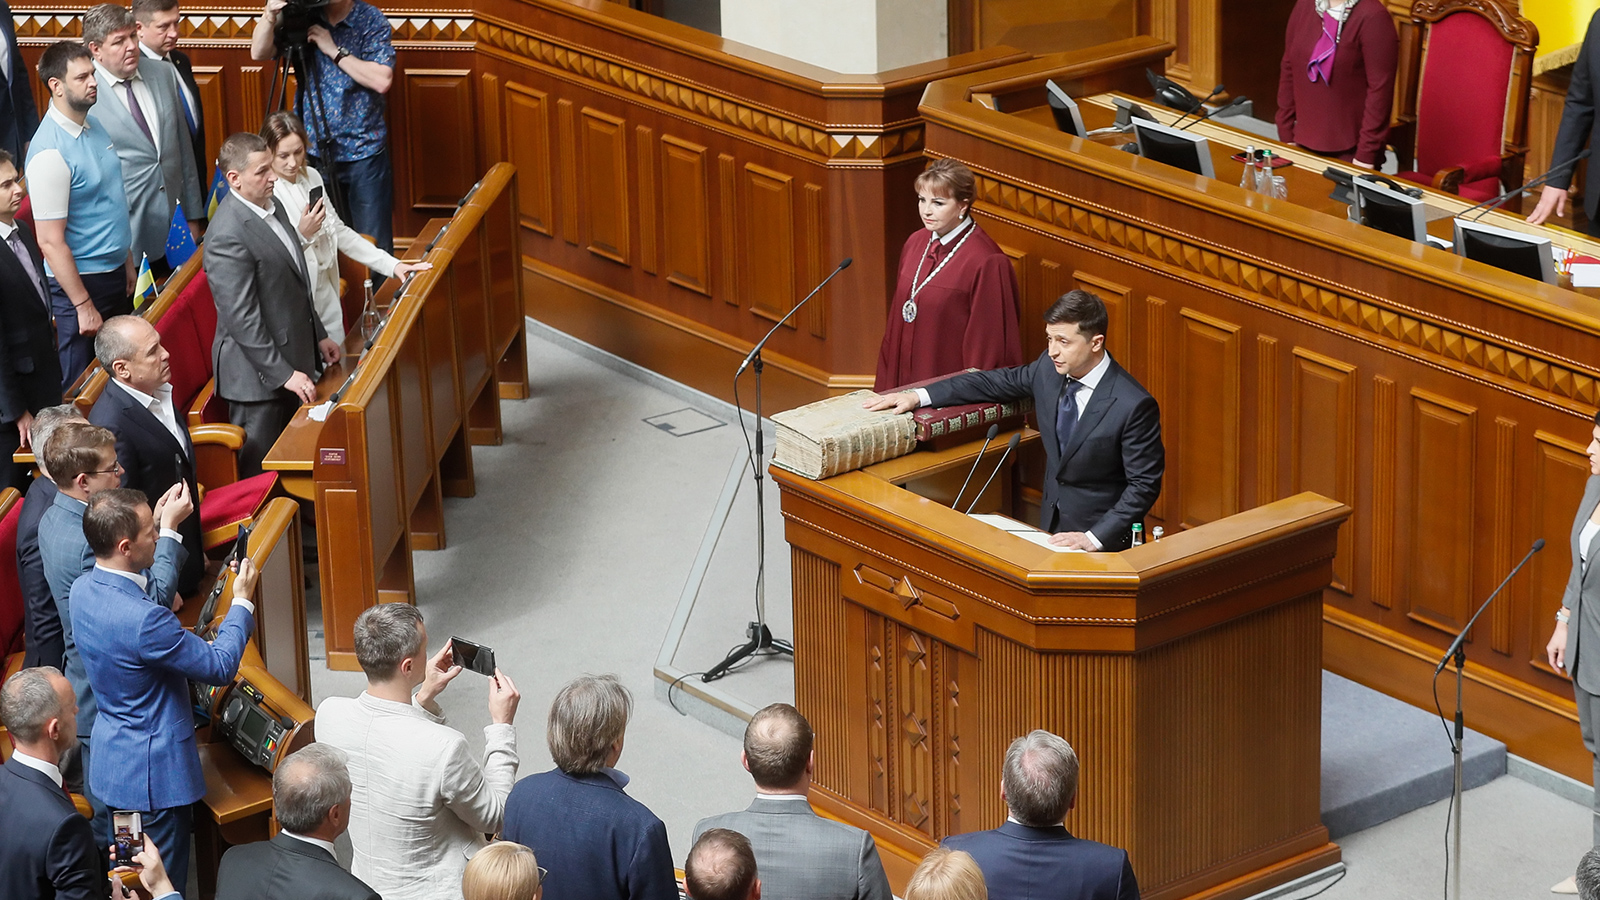  زيلينسكي بدأ مسلسل أزماته الداخلية سريعا بعد توليه الحكم في أوكرانيا (الأوروبية)